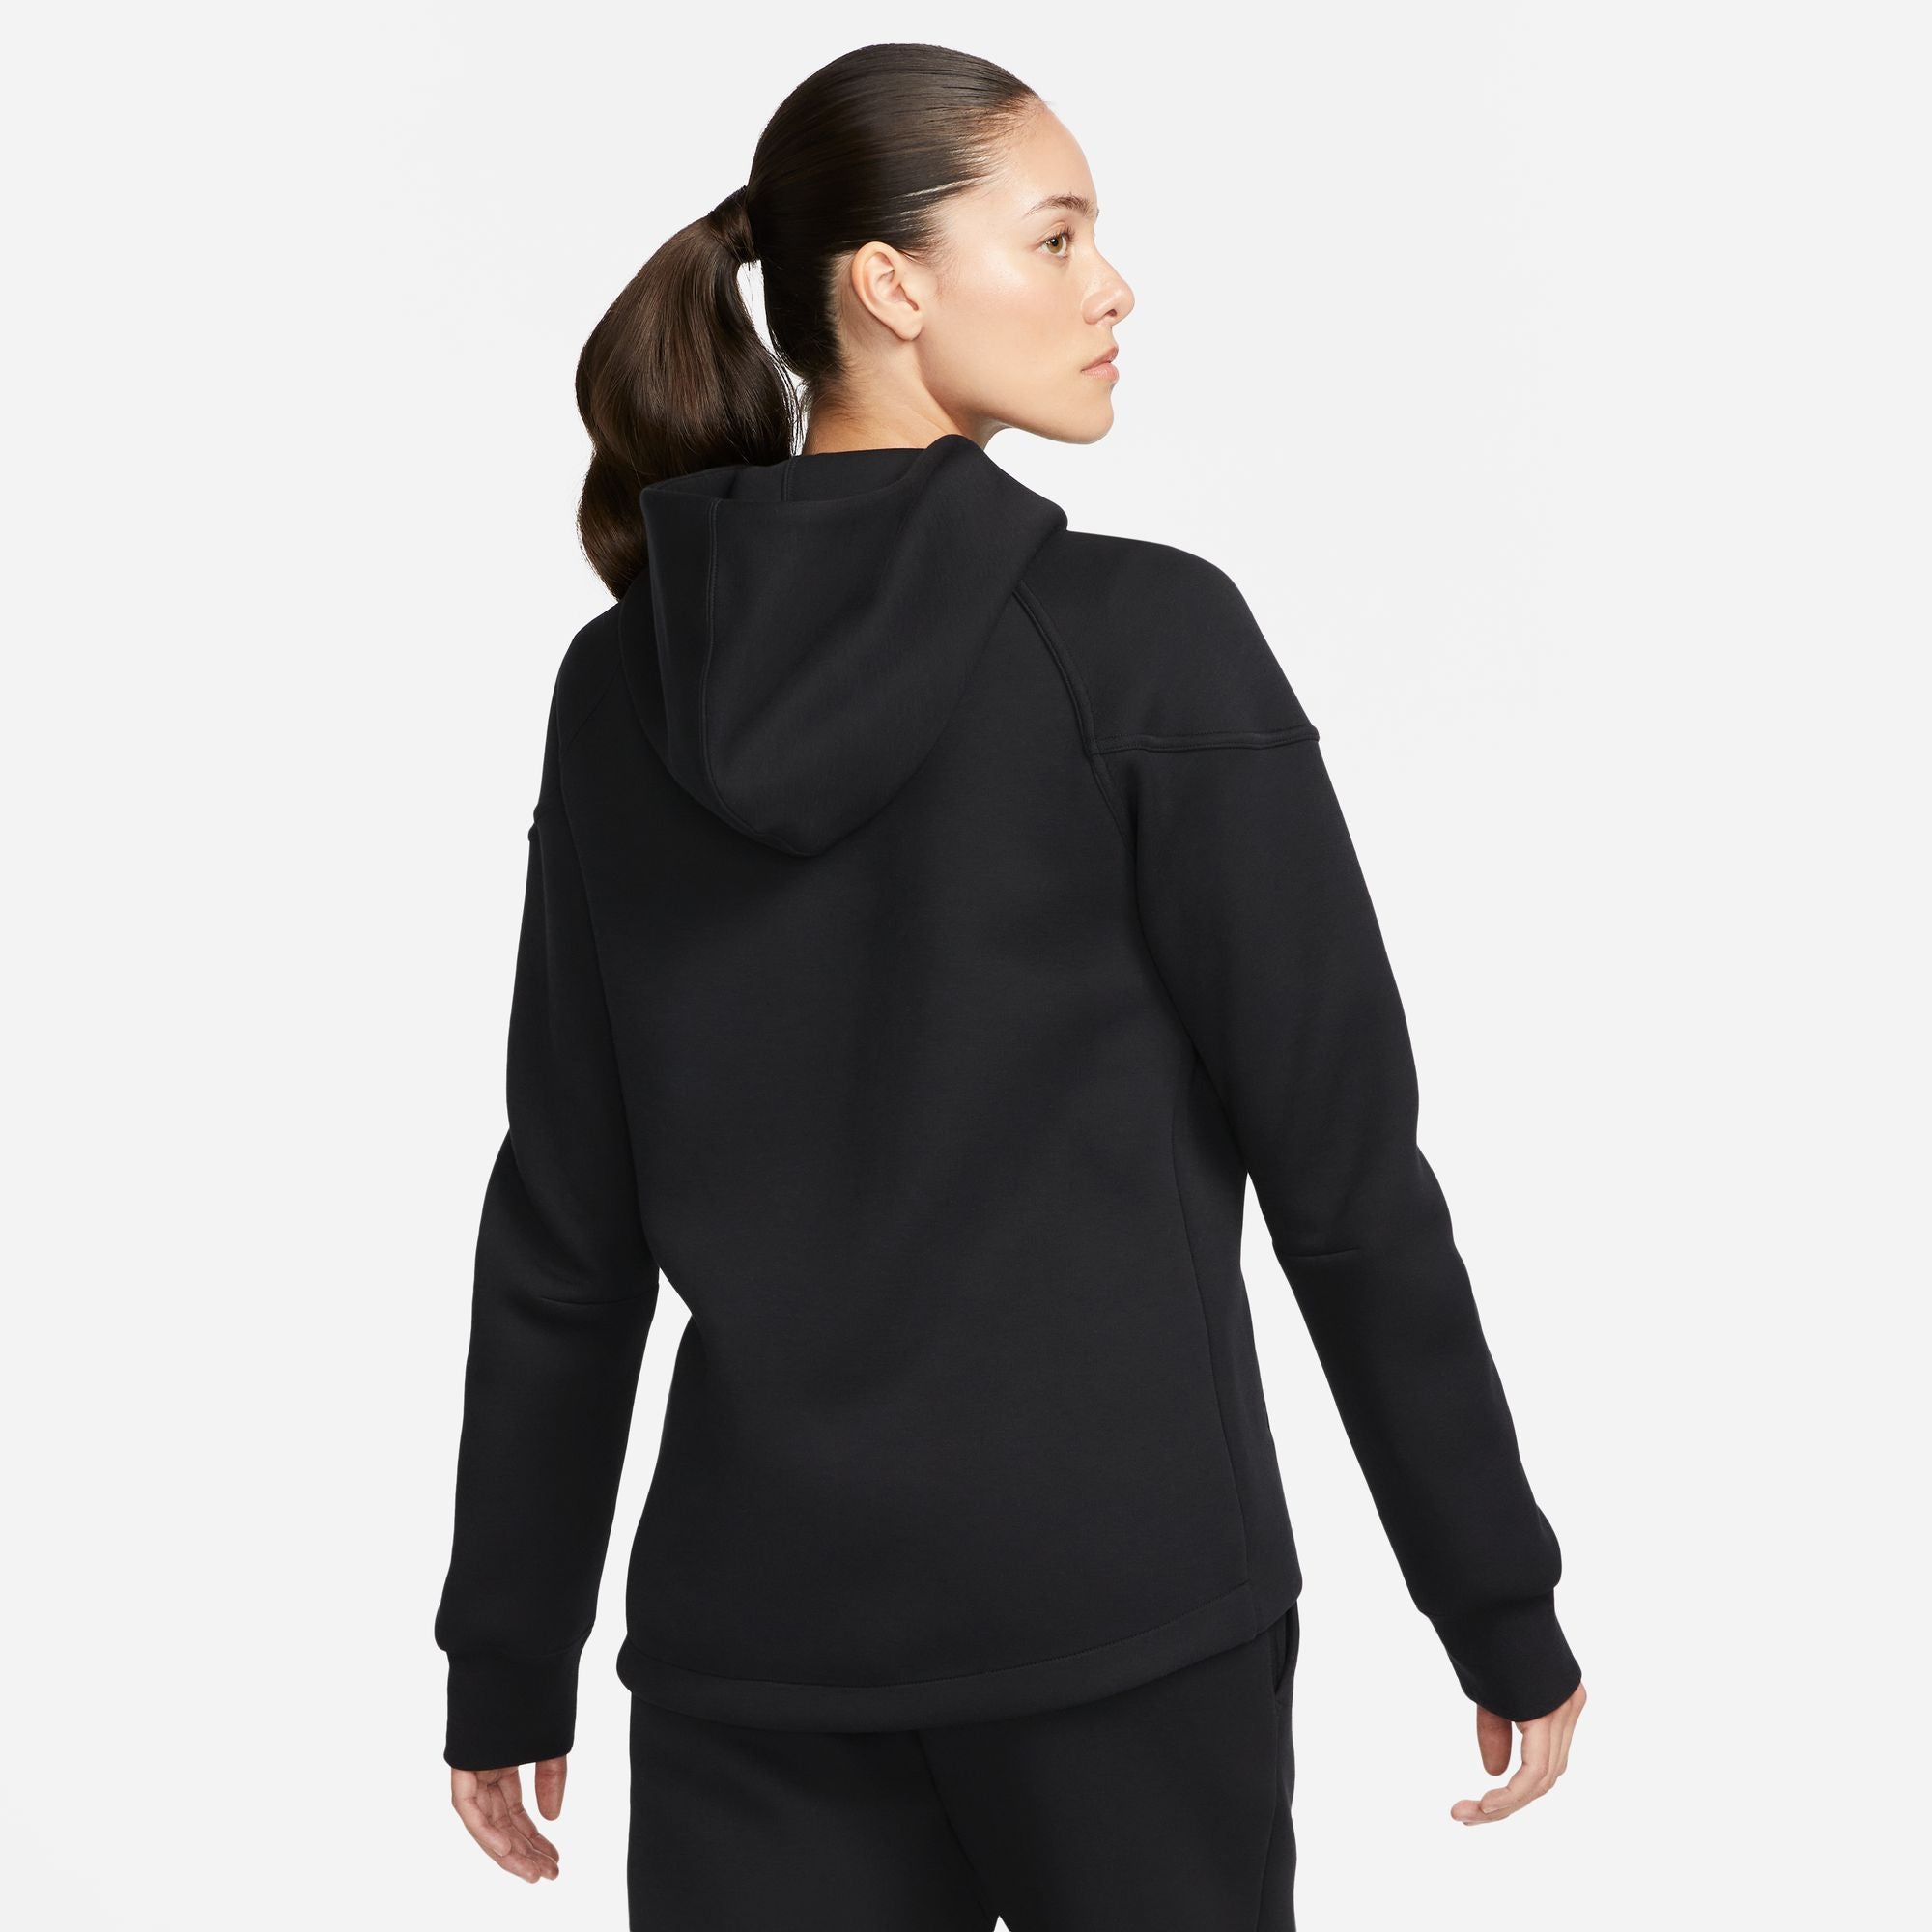 Women Nike Sportswear Tech Fleece Windrunner